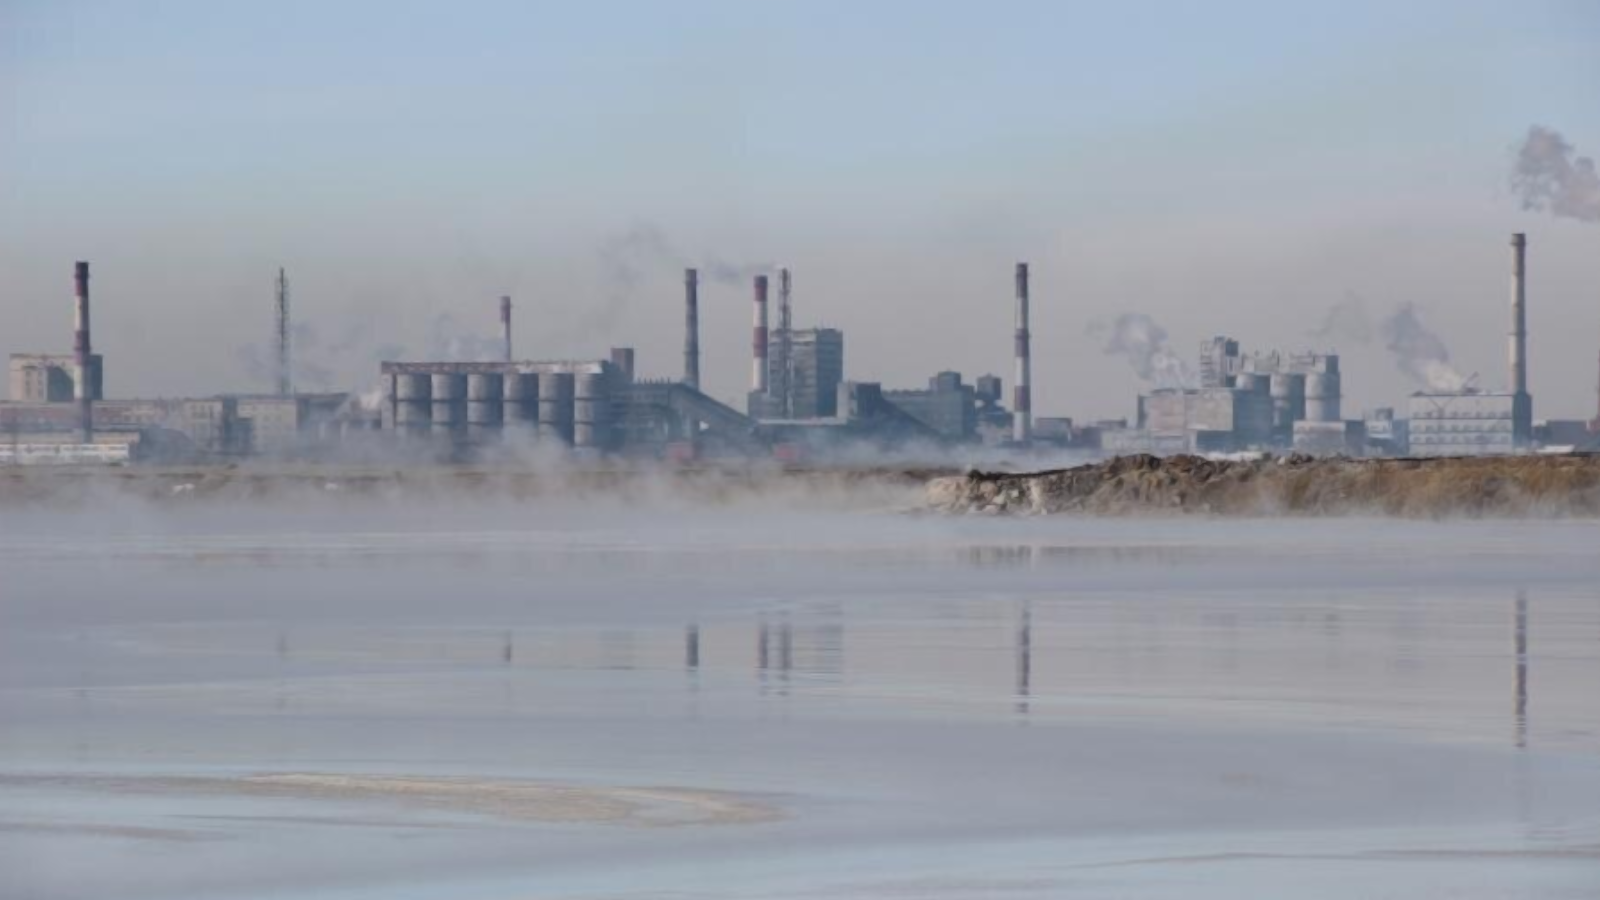 A “Baskír üdítőital cég” legálisan engedi ki a szennyező anyagokat a Belaja folyóba – döntött egy orosz bíróság